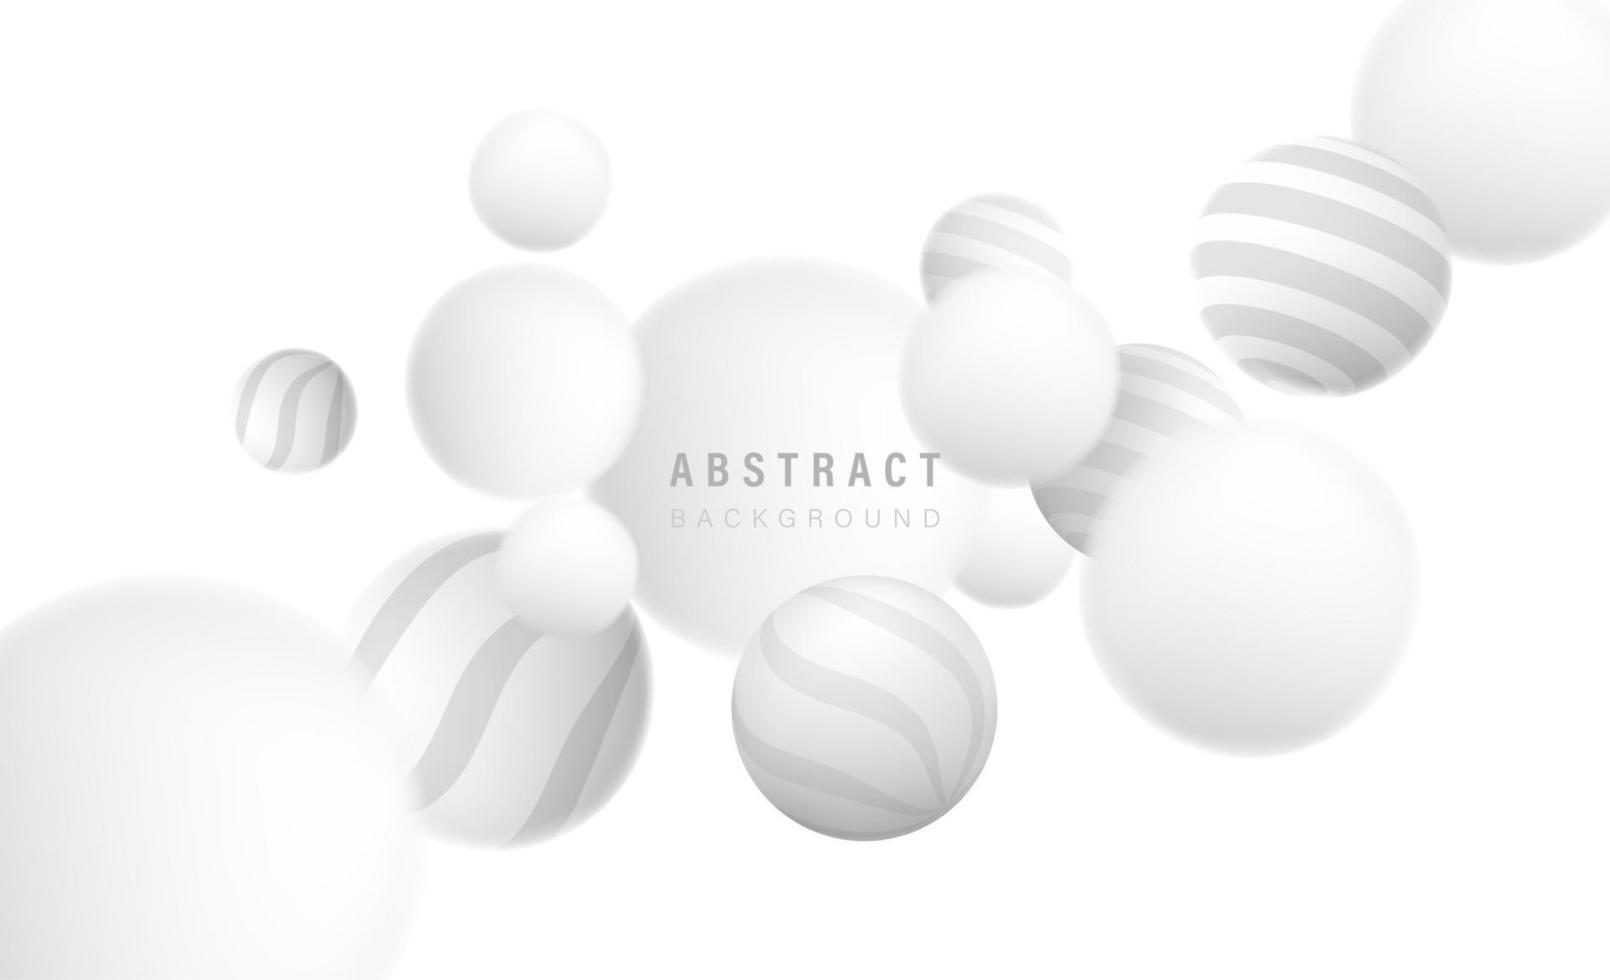 abstrato branco cinza com elementos de padrão de bola de círculo 3d. conceito de design de arte para banner de negócios, pôster, capa ou planos de fundo. ilustração vetorial vetor